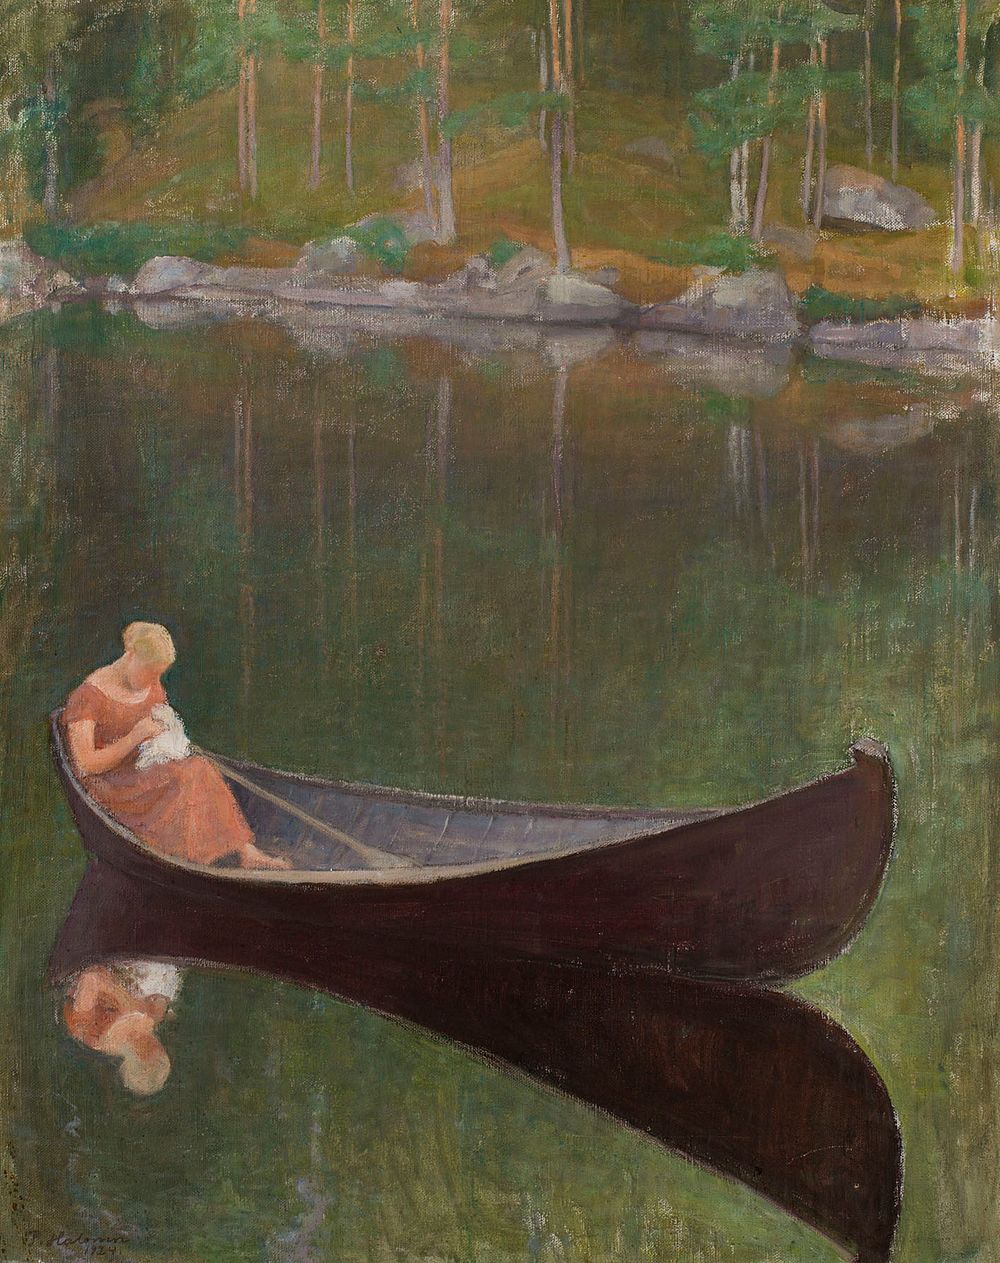 Woman in a boat, 1924, by Pekka Halonen